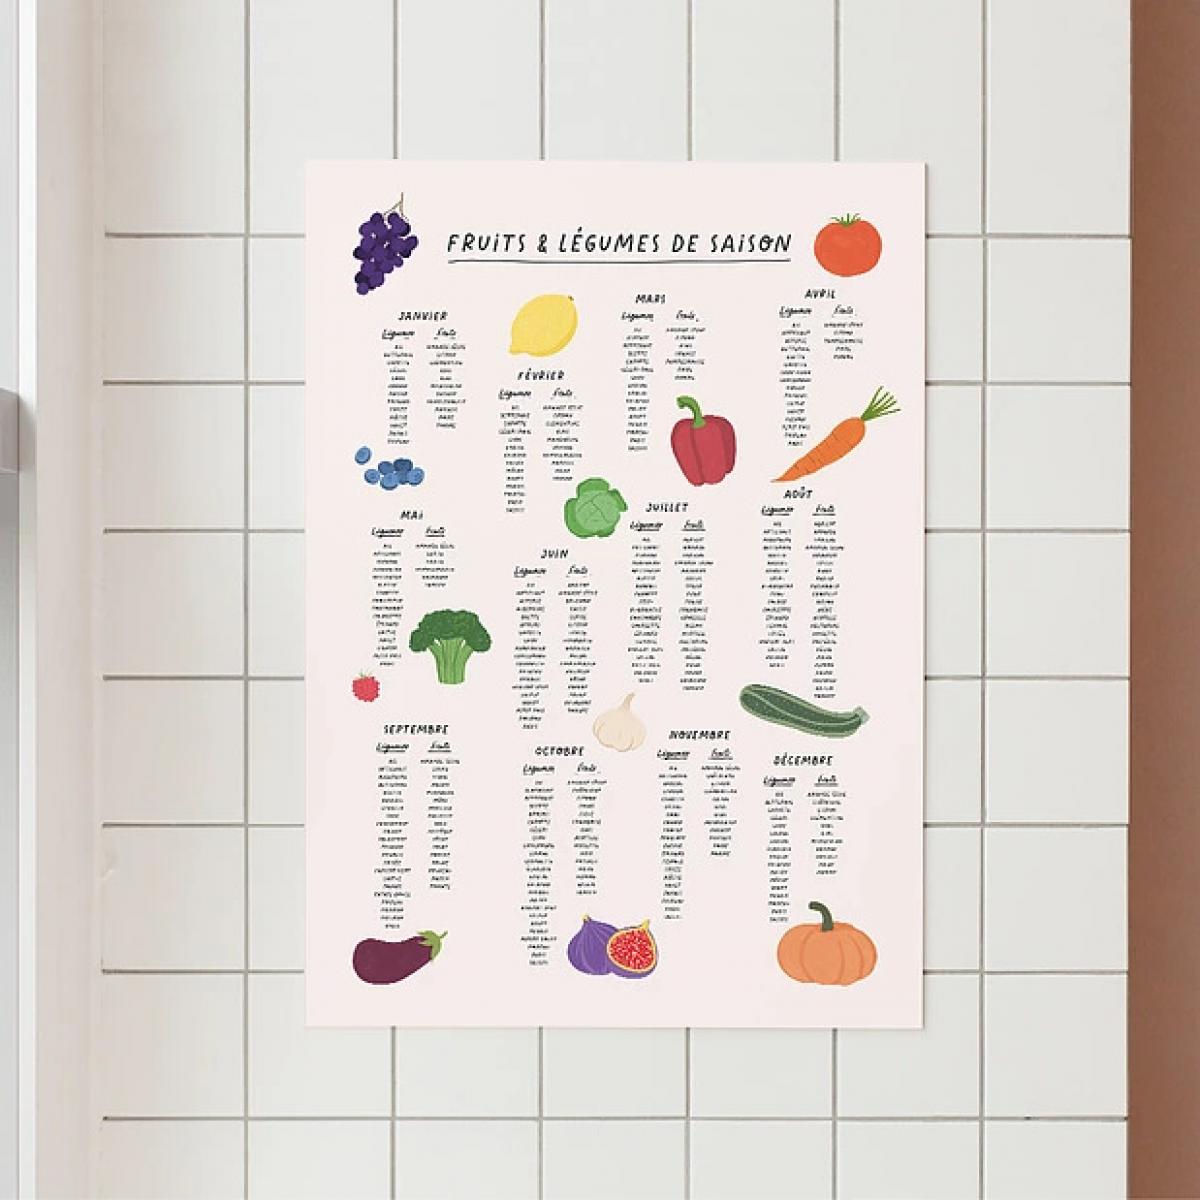 Une affiche des fruits et légumes de saison